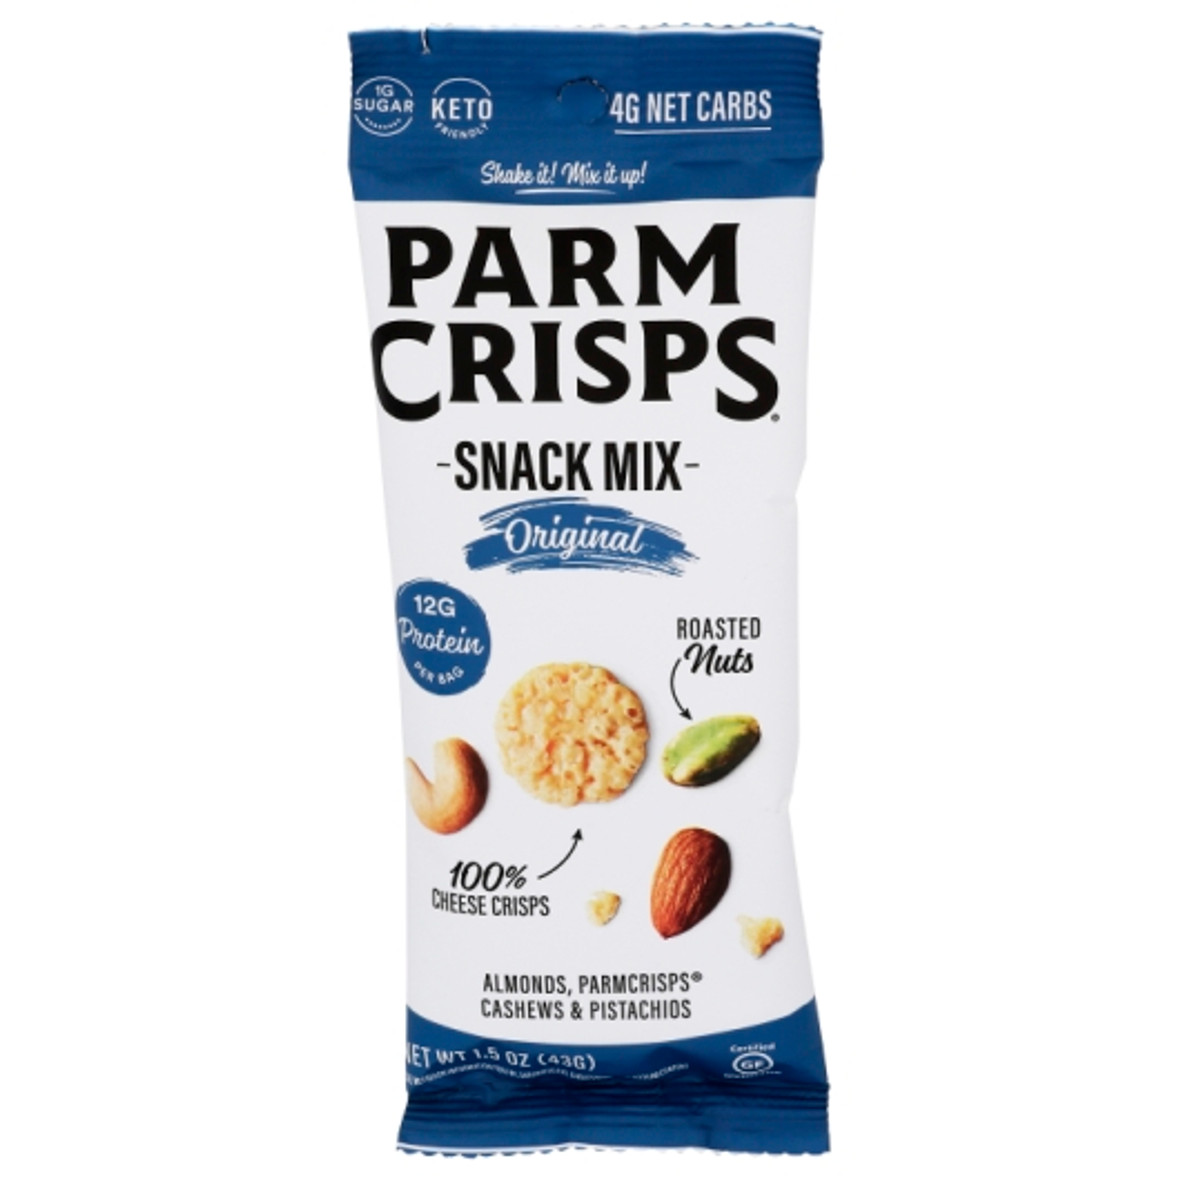 Parm Crisps Thwr Parmesan Crisps Original Snack Mix, 1.5 Ounce, 12 Per Box, 8 Per Case